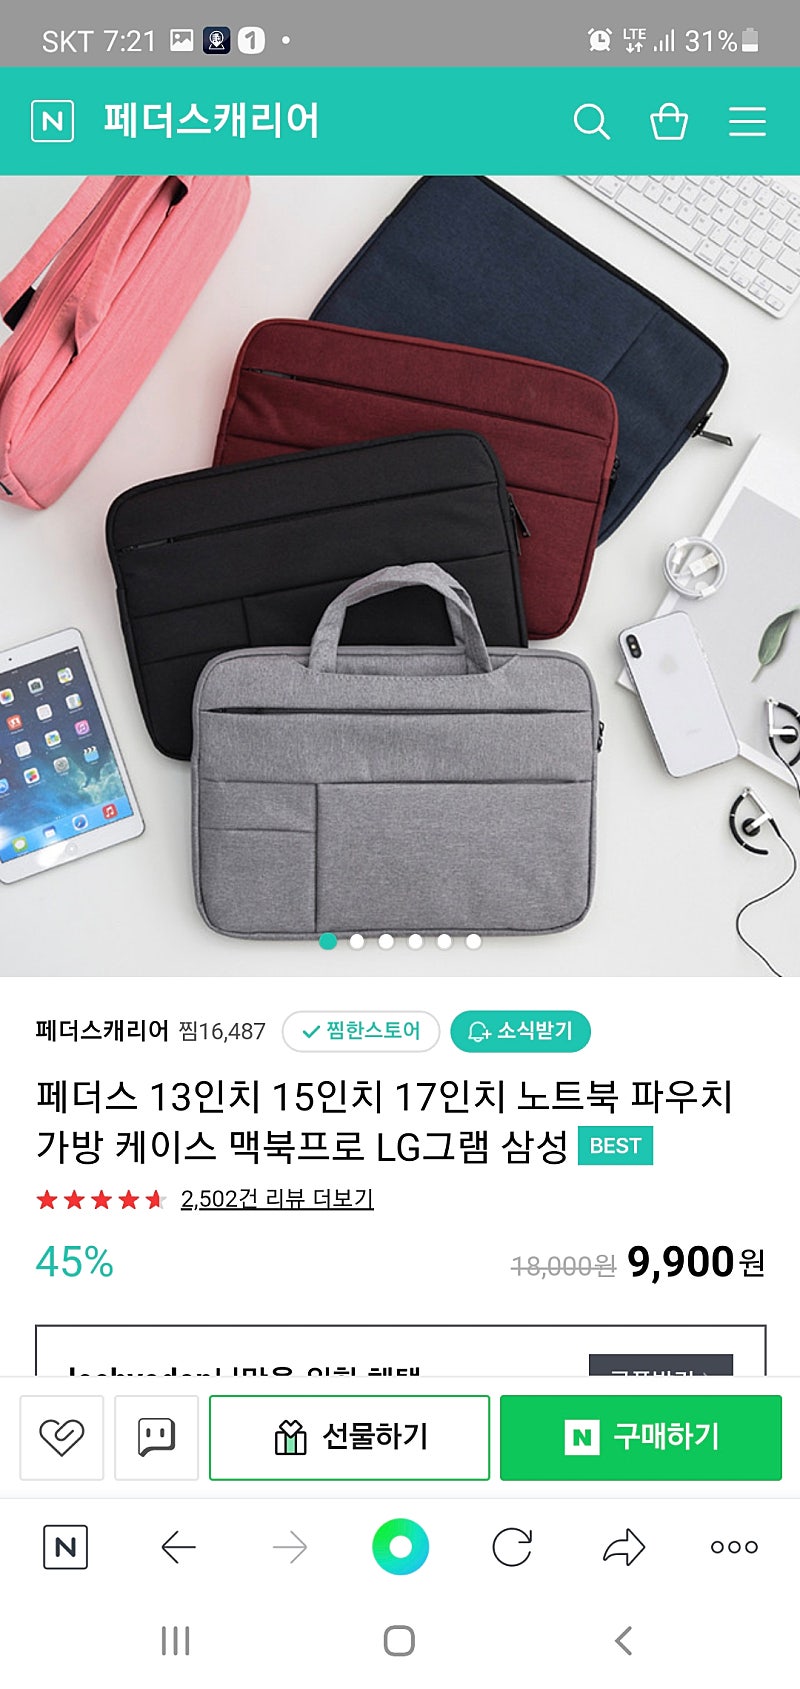 [개봉후 미사용] 페더스 13인치 노트북 파우치 가방 1만원